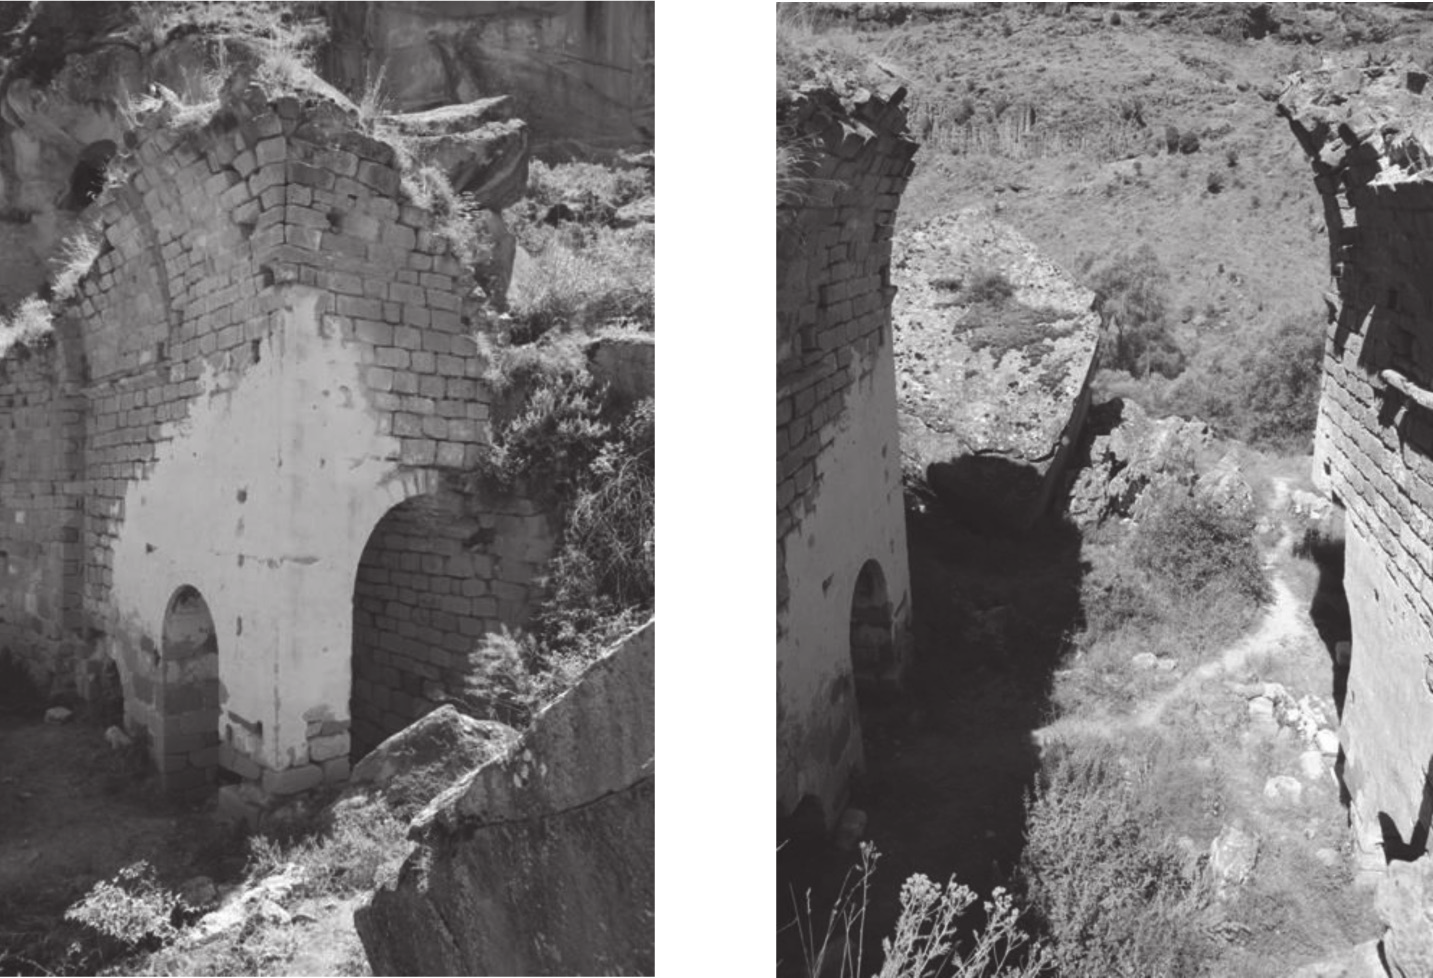 Aksaray, Belisırma Köyü, Karagedik Kilise Resim 10. Güneydoğu Köşe Odası, Kuzeybatıdan Bakış (Soykan, 2010) Resim 11.